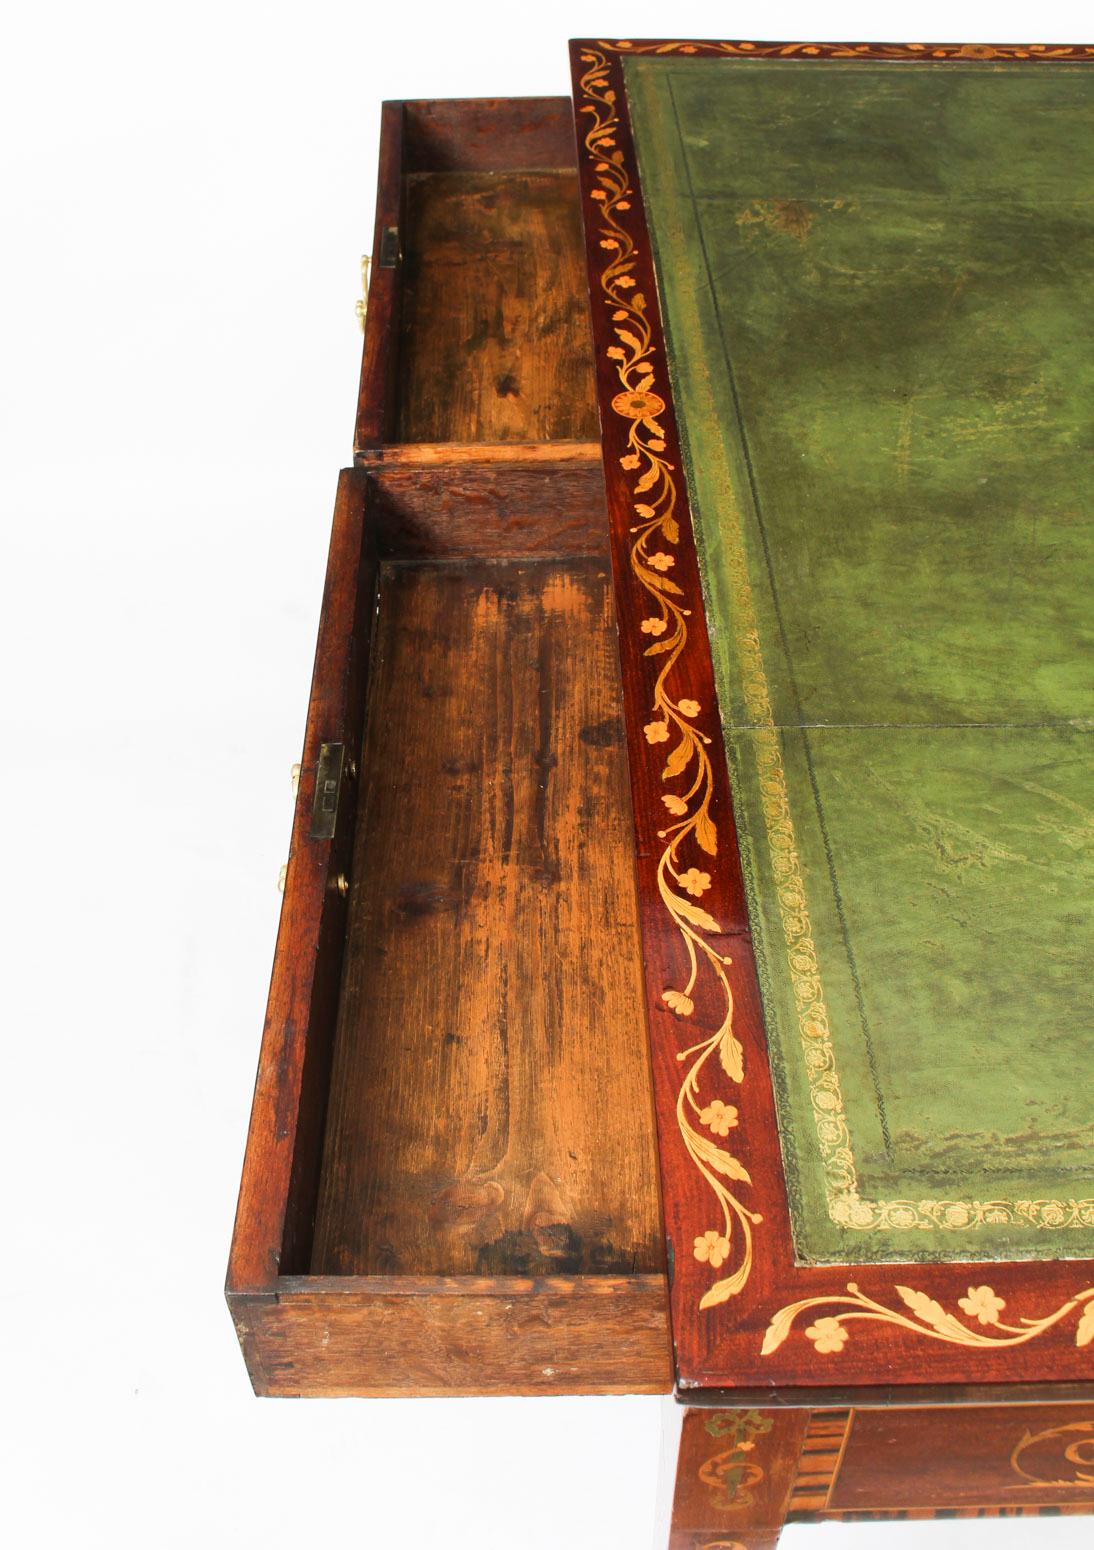 Il s'agit d'une belle table de bibliothèque ancienne de George III en acajou et marqueterie, datant d'environ 1780.

La table est ornée d'une magnifique marqueterie de fleurs et de rinceaux sur toute sa surface, avec des panneaux en marqueterie